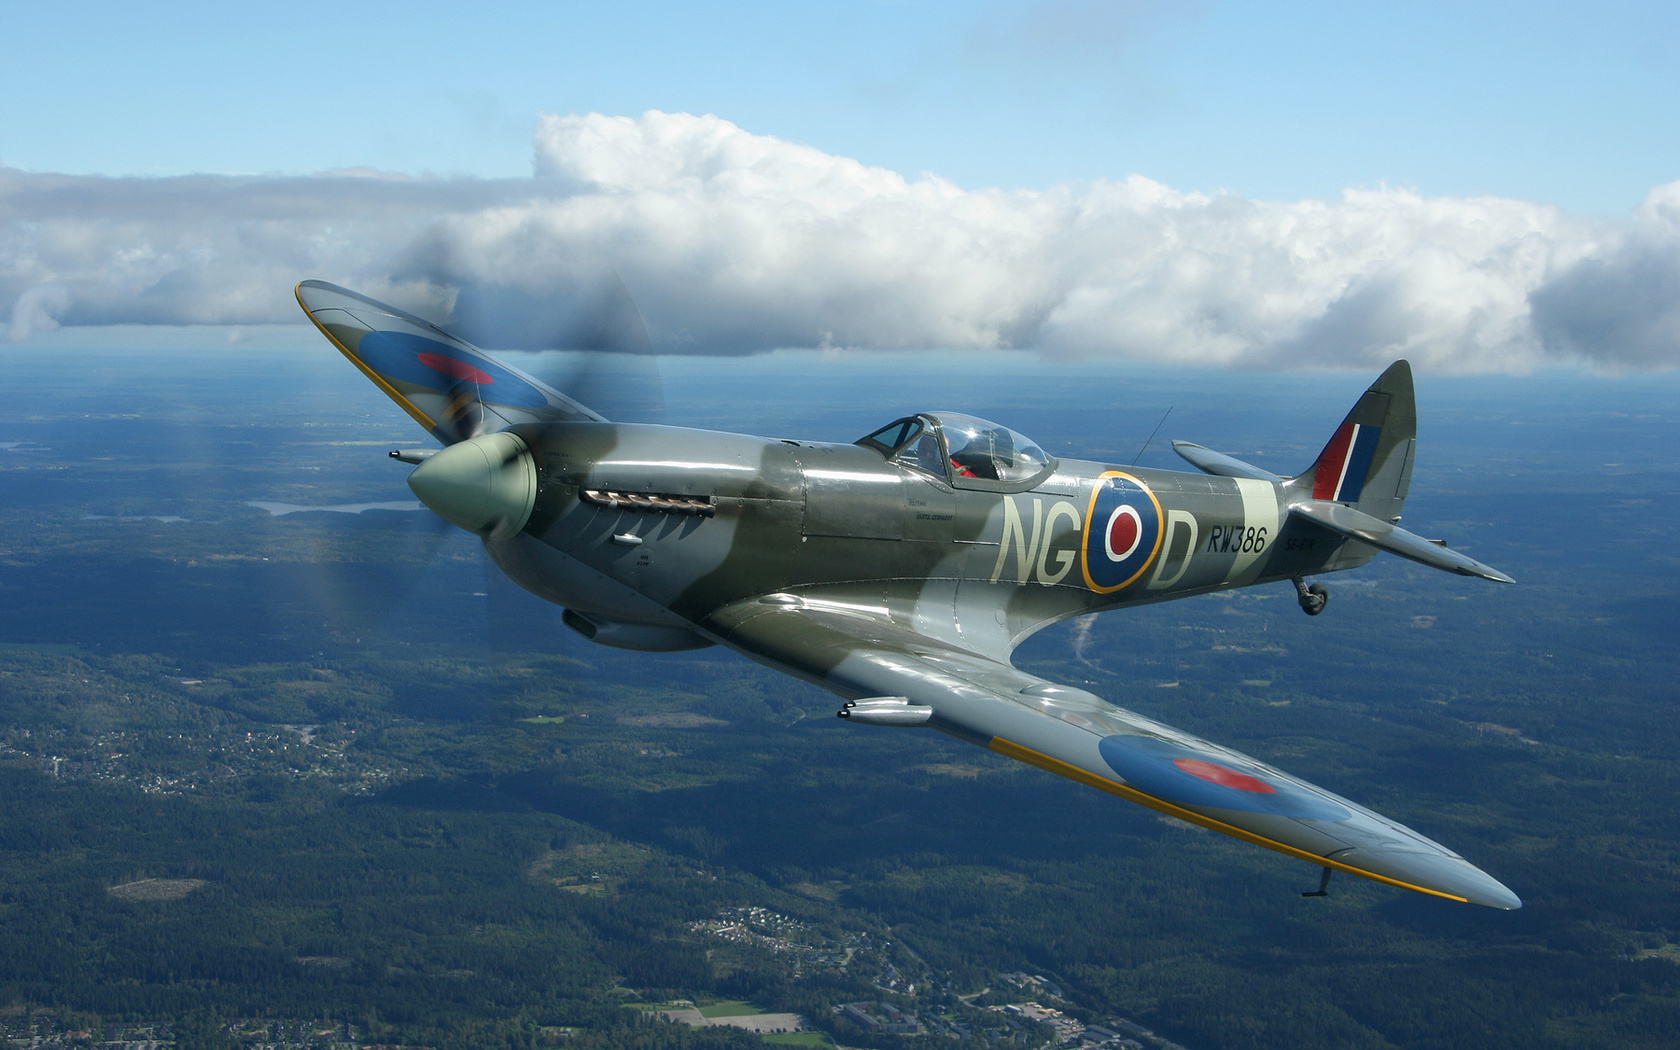 Spitfire Wallpaper Hd Supermarine Spitfire Aircraft Plane Clouds ...